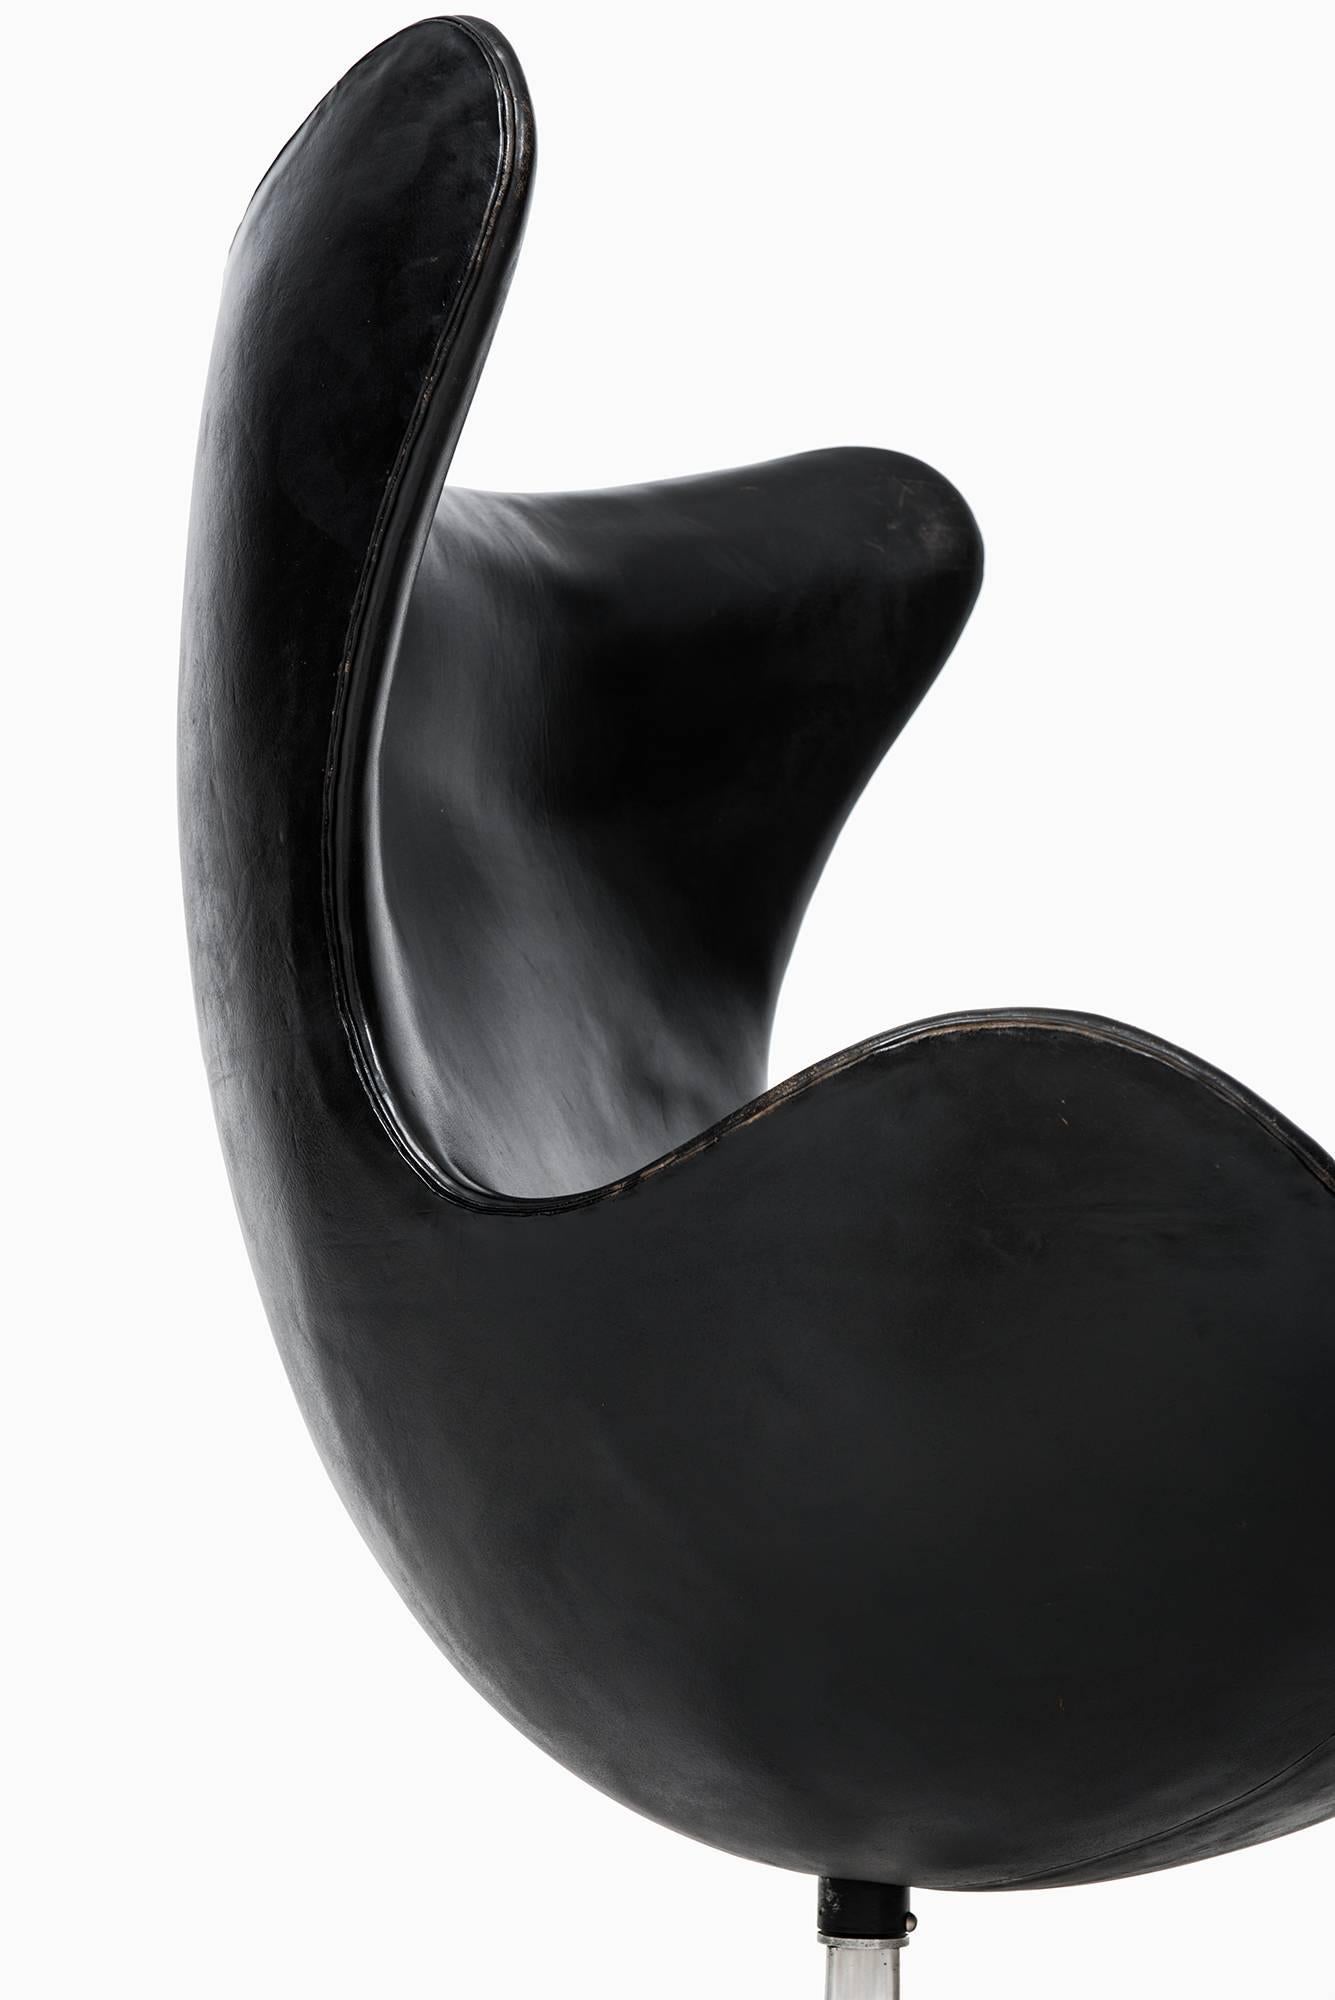 Arne Jacobsen Egg Chair Model 3316 by Fritz Hansen in Denmark 2